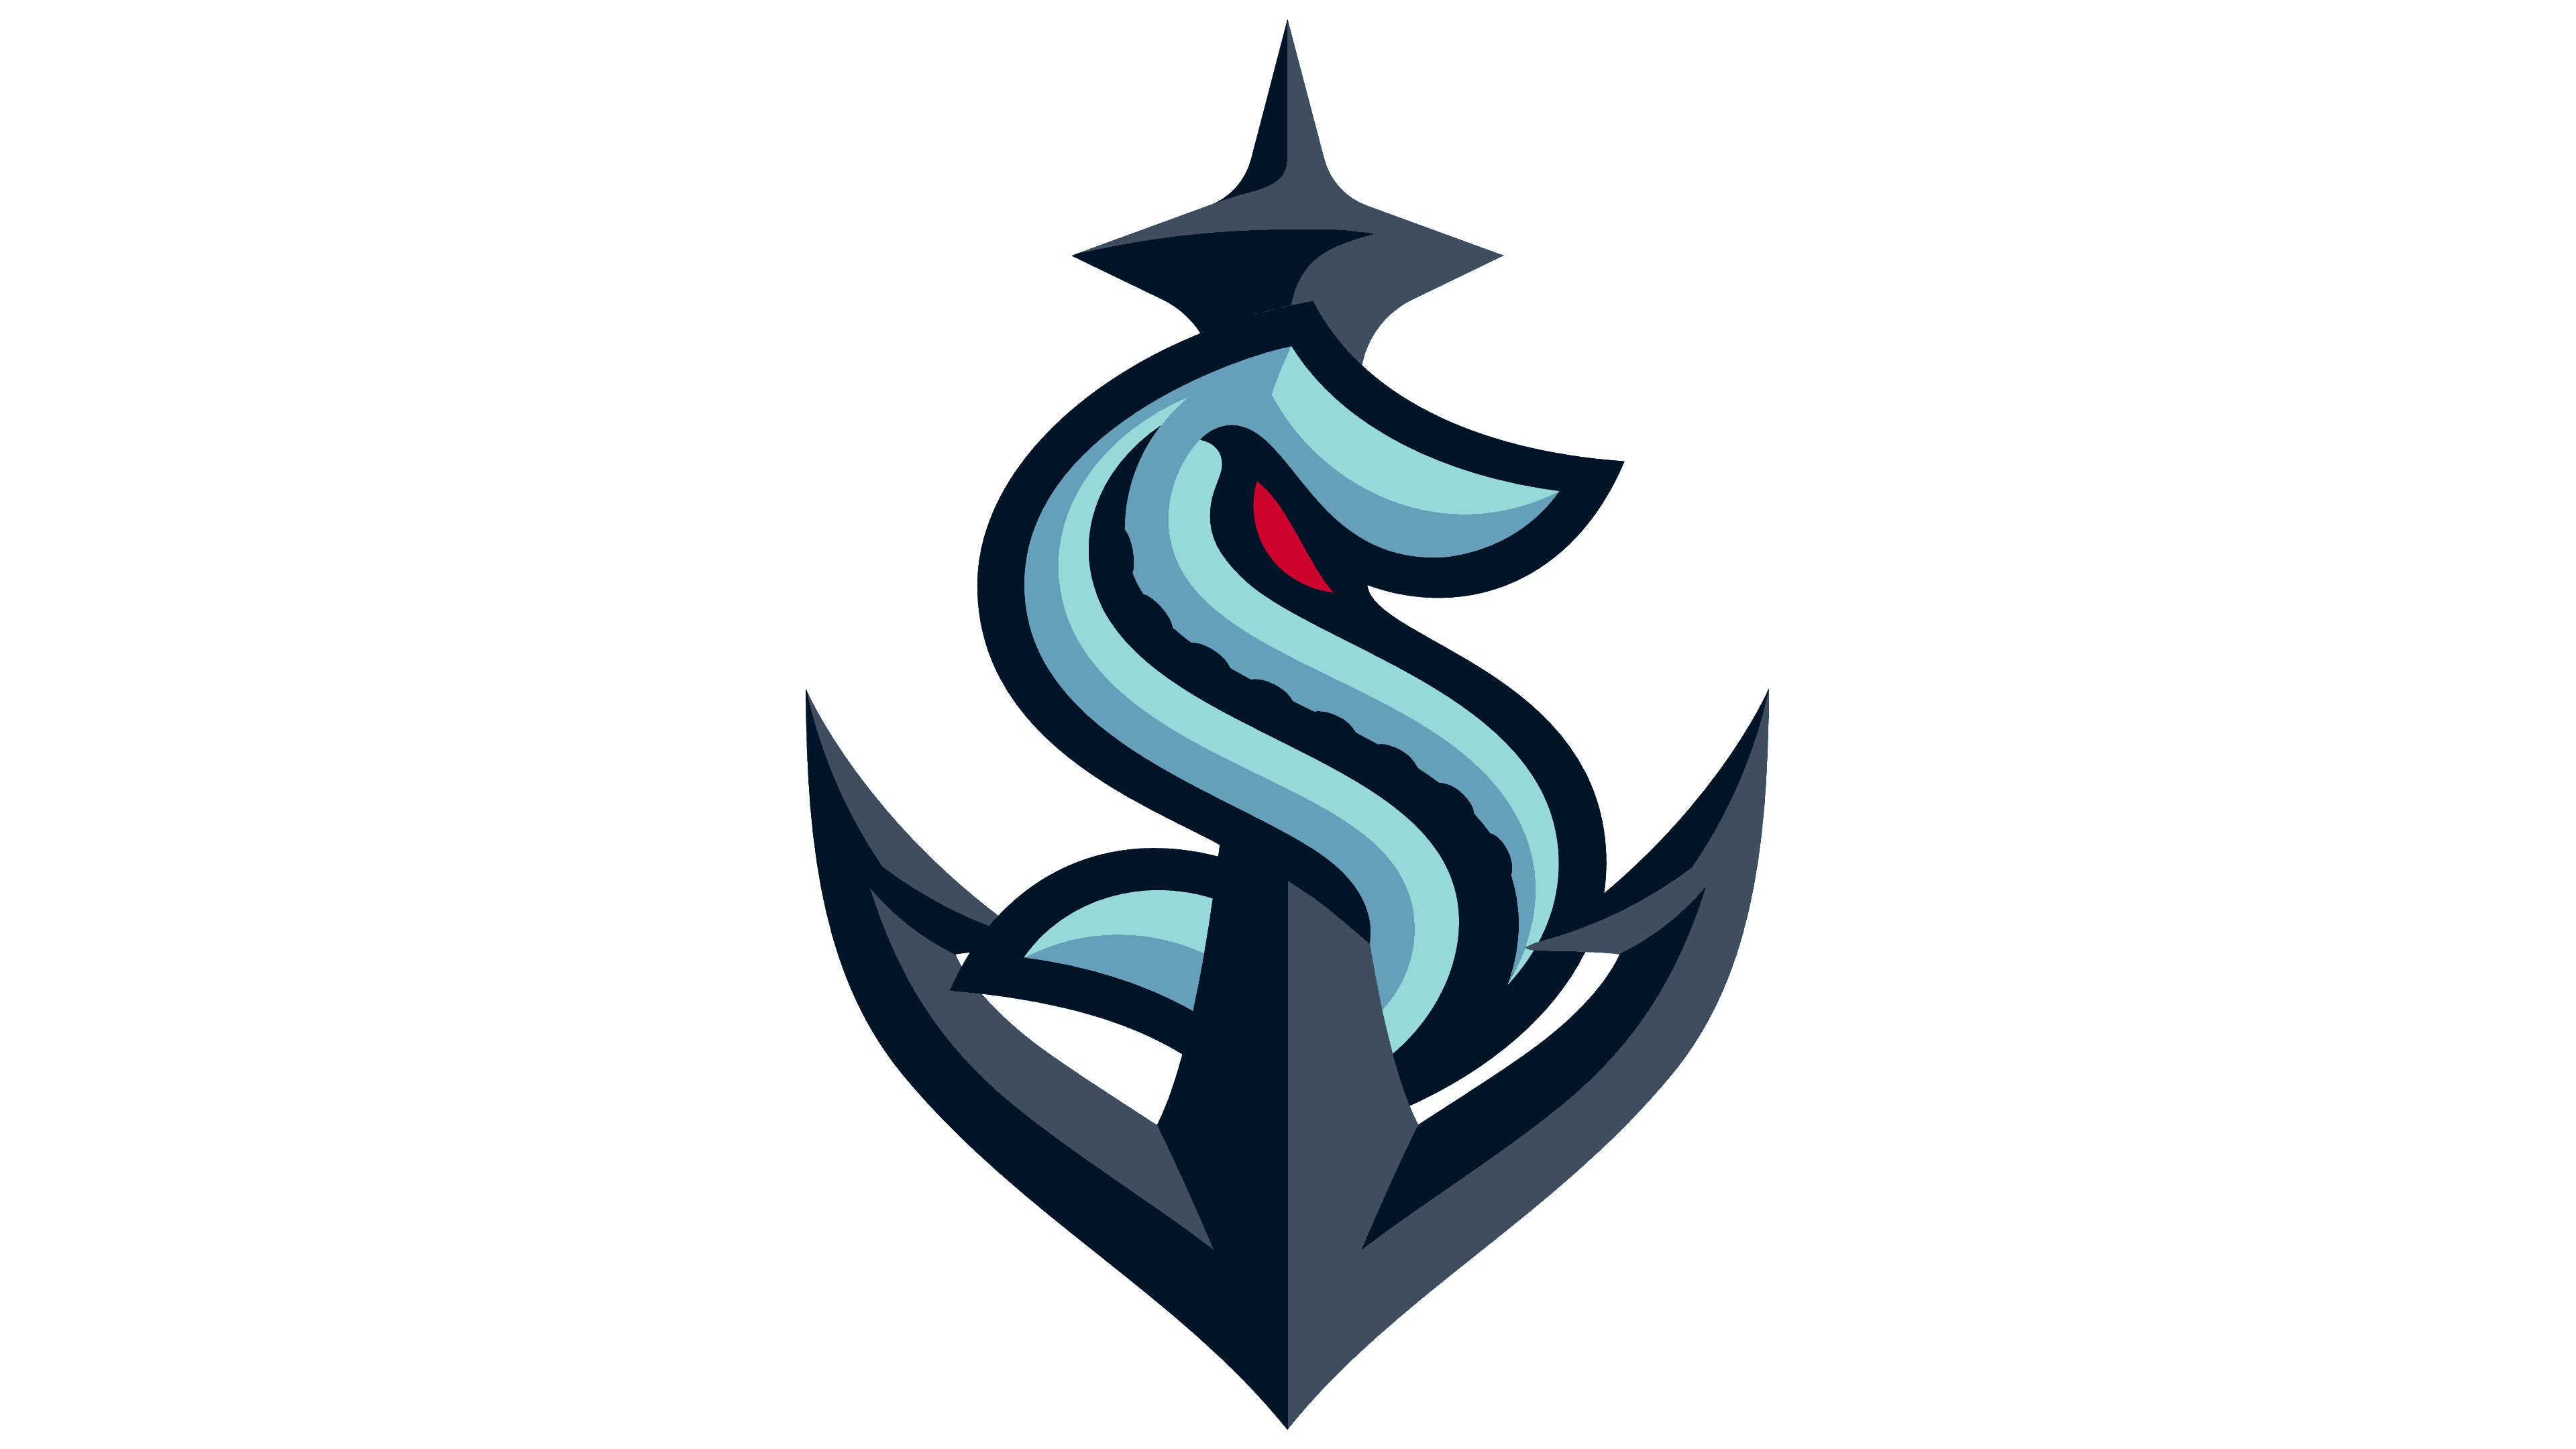 Kraken Logo  Kraken logo, Pet logo design, Kraken